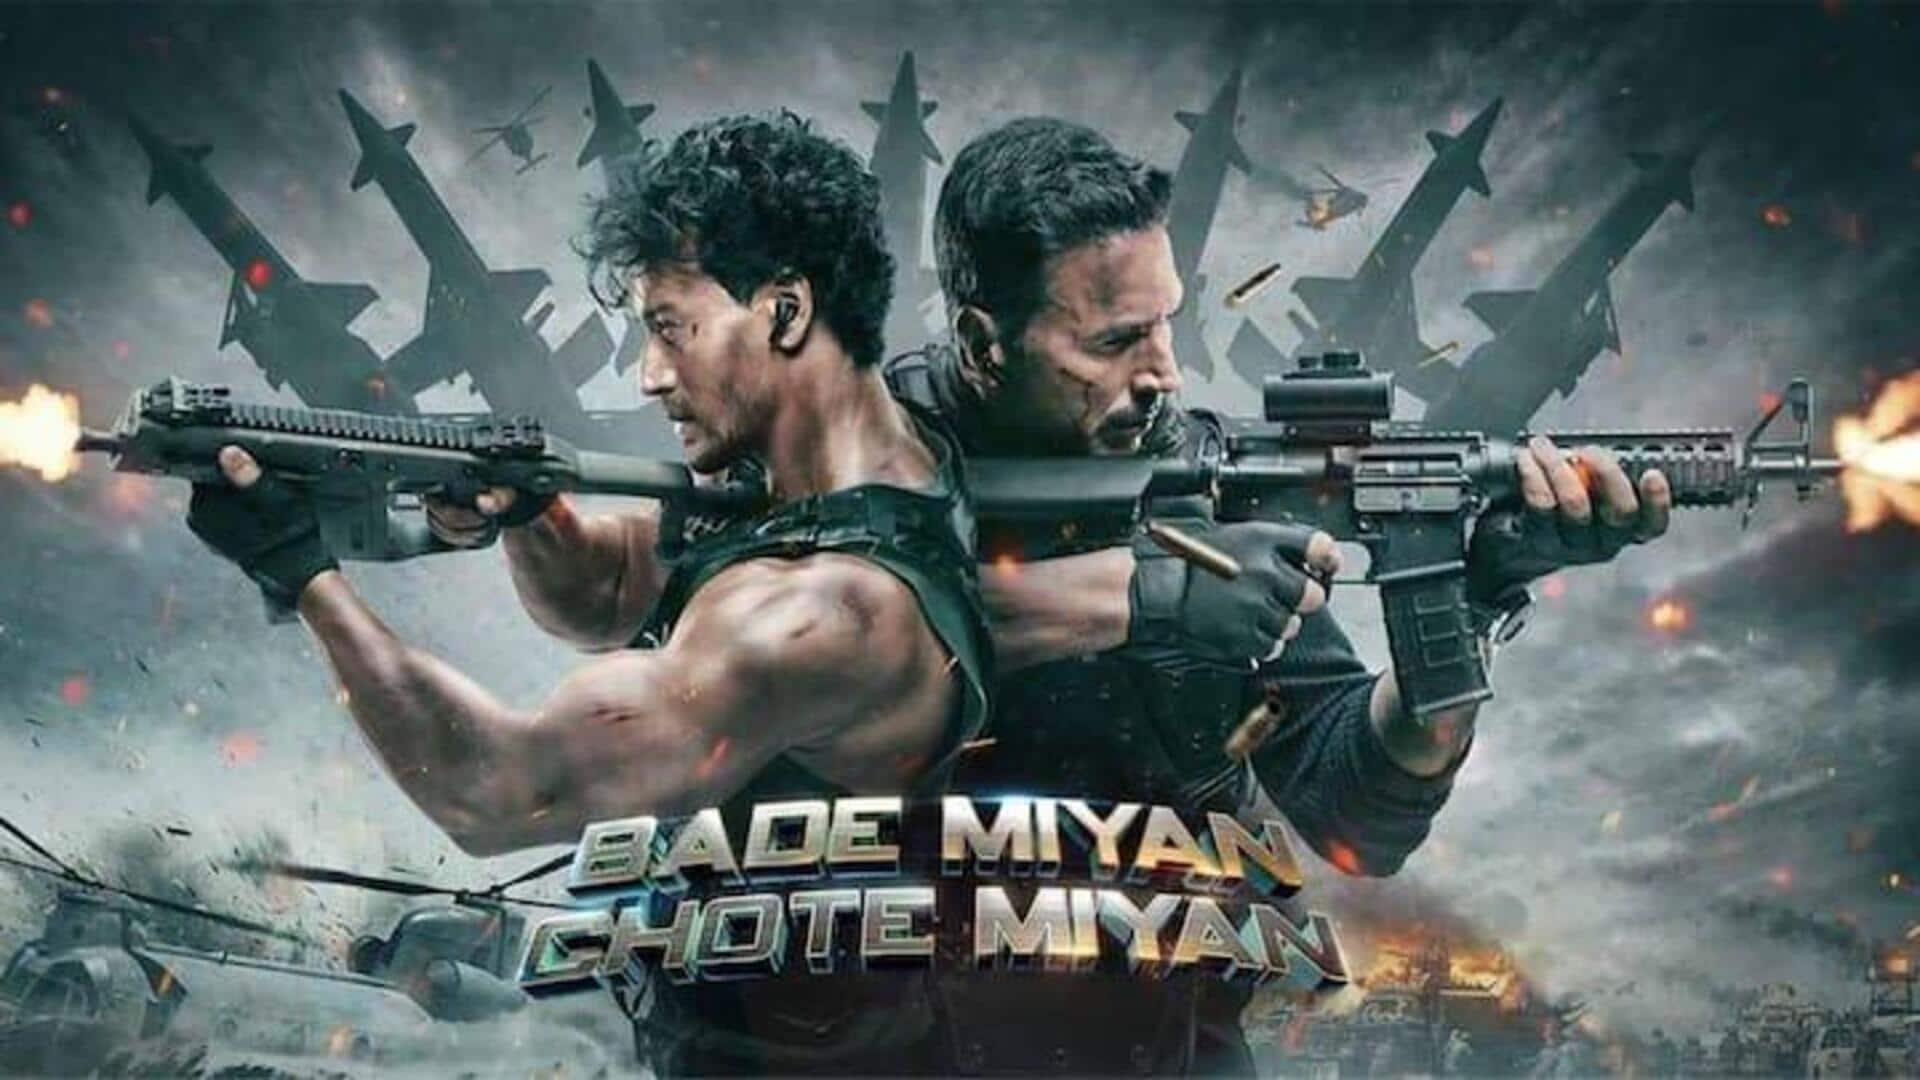 Box office: 'Bade Miyan Chote Miyan's earnings remain low 